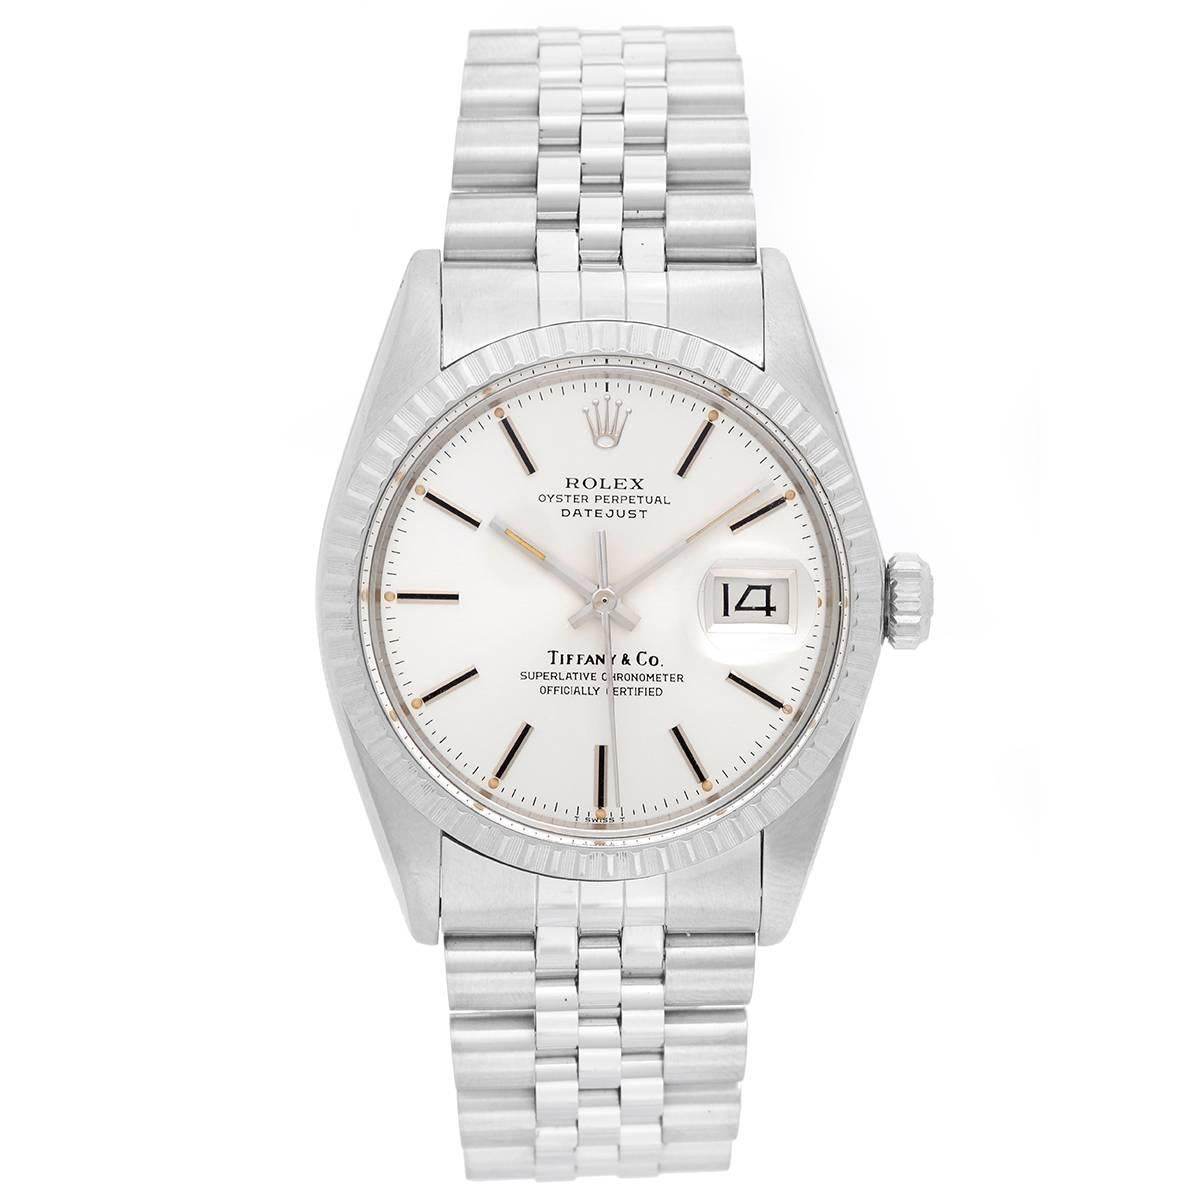 Rolex Tiffany & Co. Datejust Steel Automatic Wristwatch